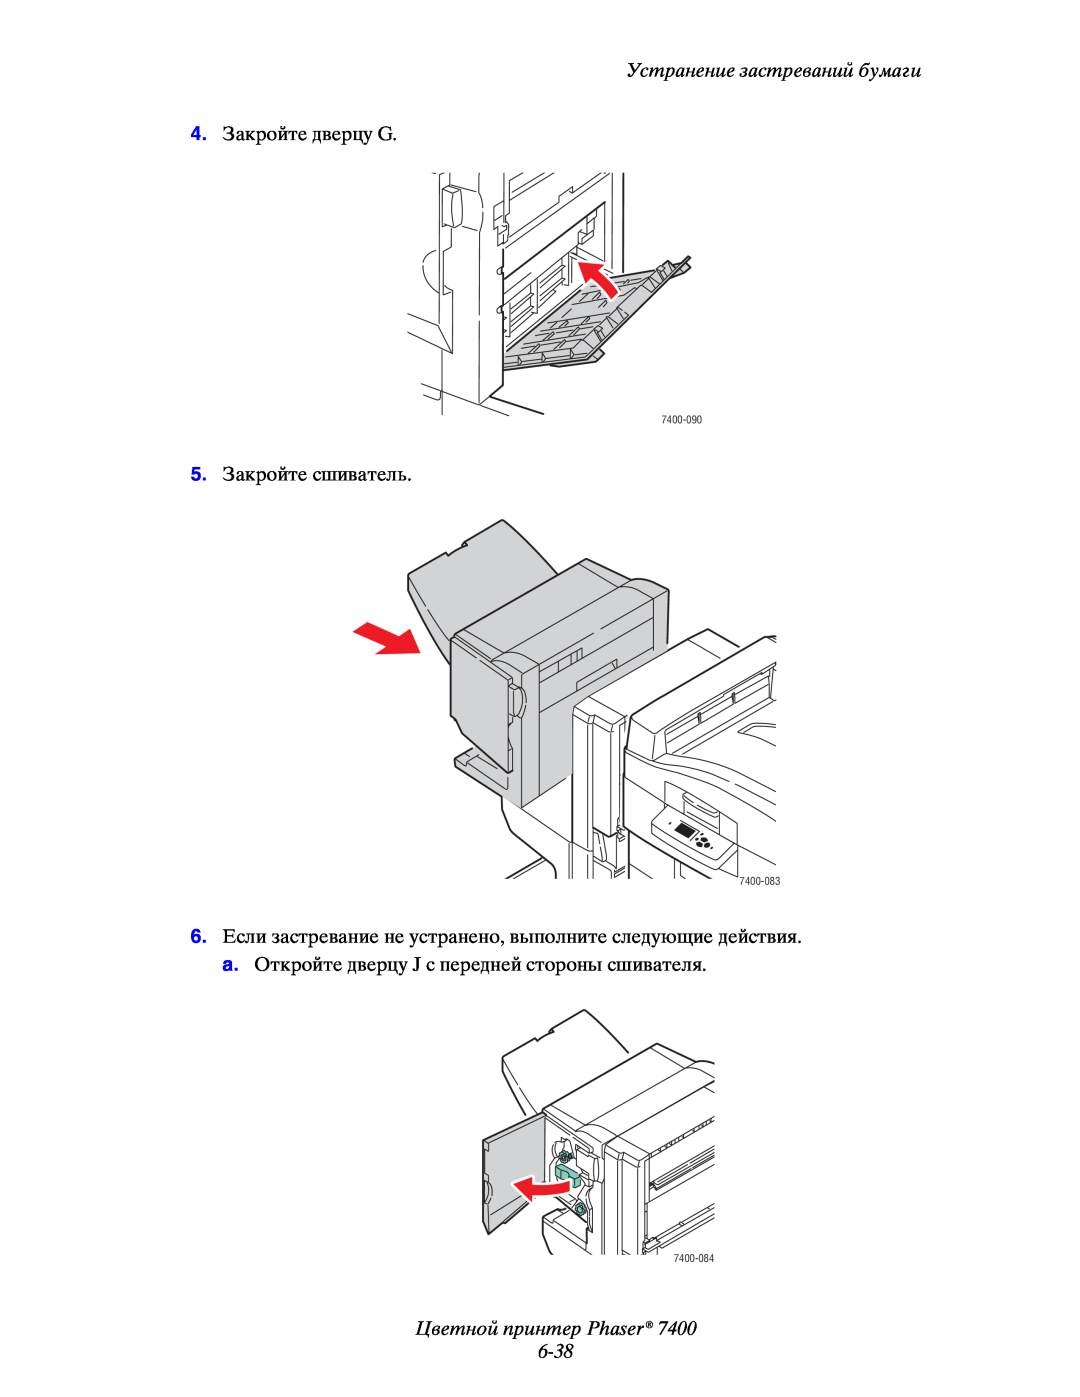 Xerox manual Цветной принтер Phaser 6-38, Устранение застреваний бумаги, 7400-090, 7400-083, 7400-084 